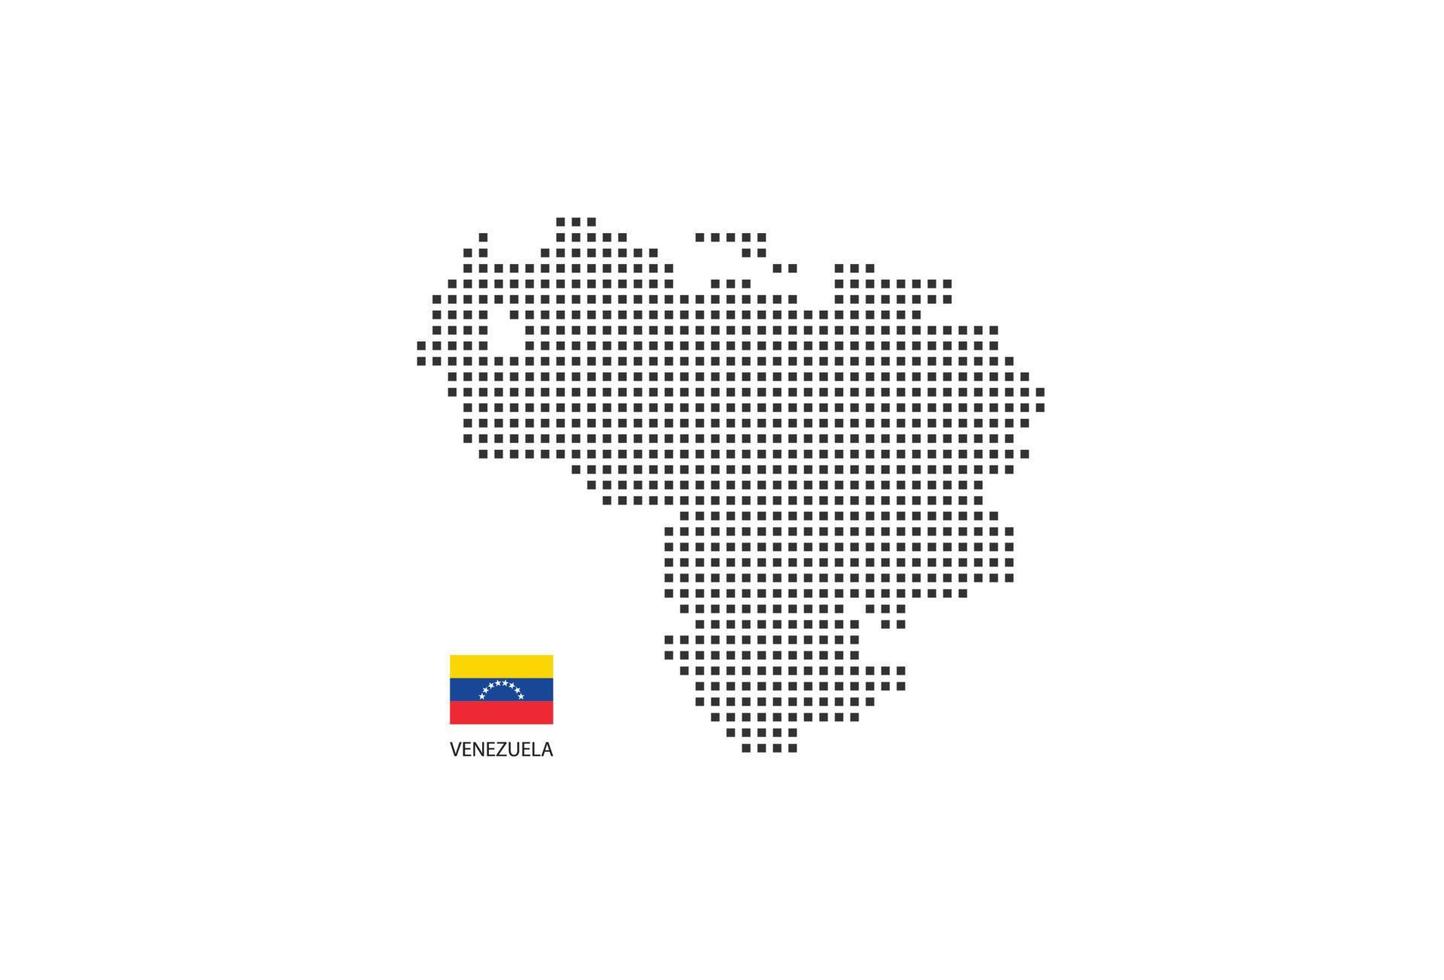 mapa pontilhado de pixel quadrado vetorial da venezuela isolado no fundo branco com a bandeira da venezuela. vetor